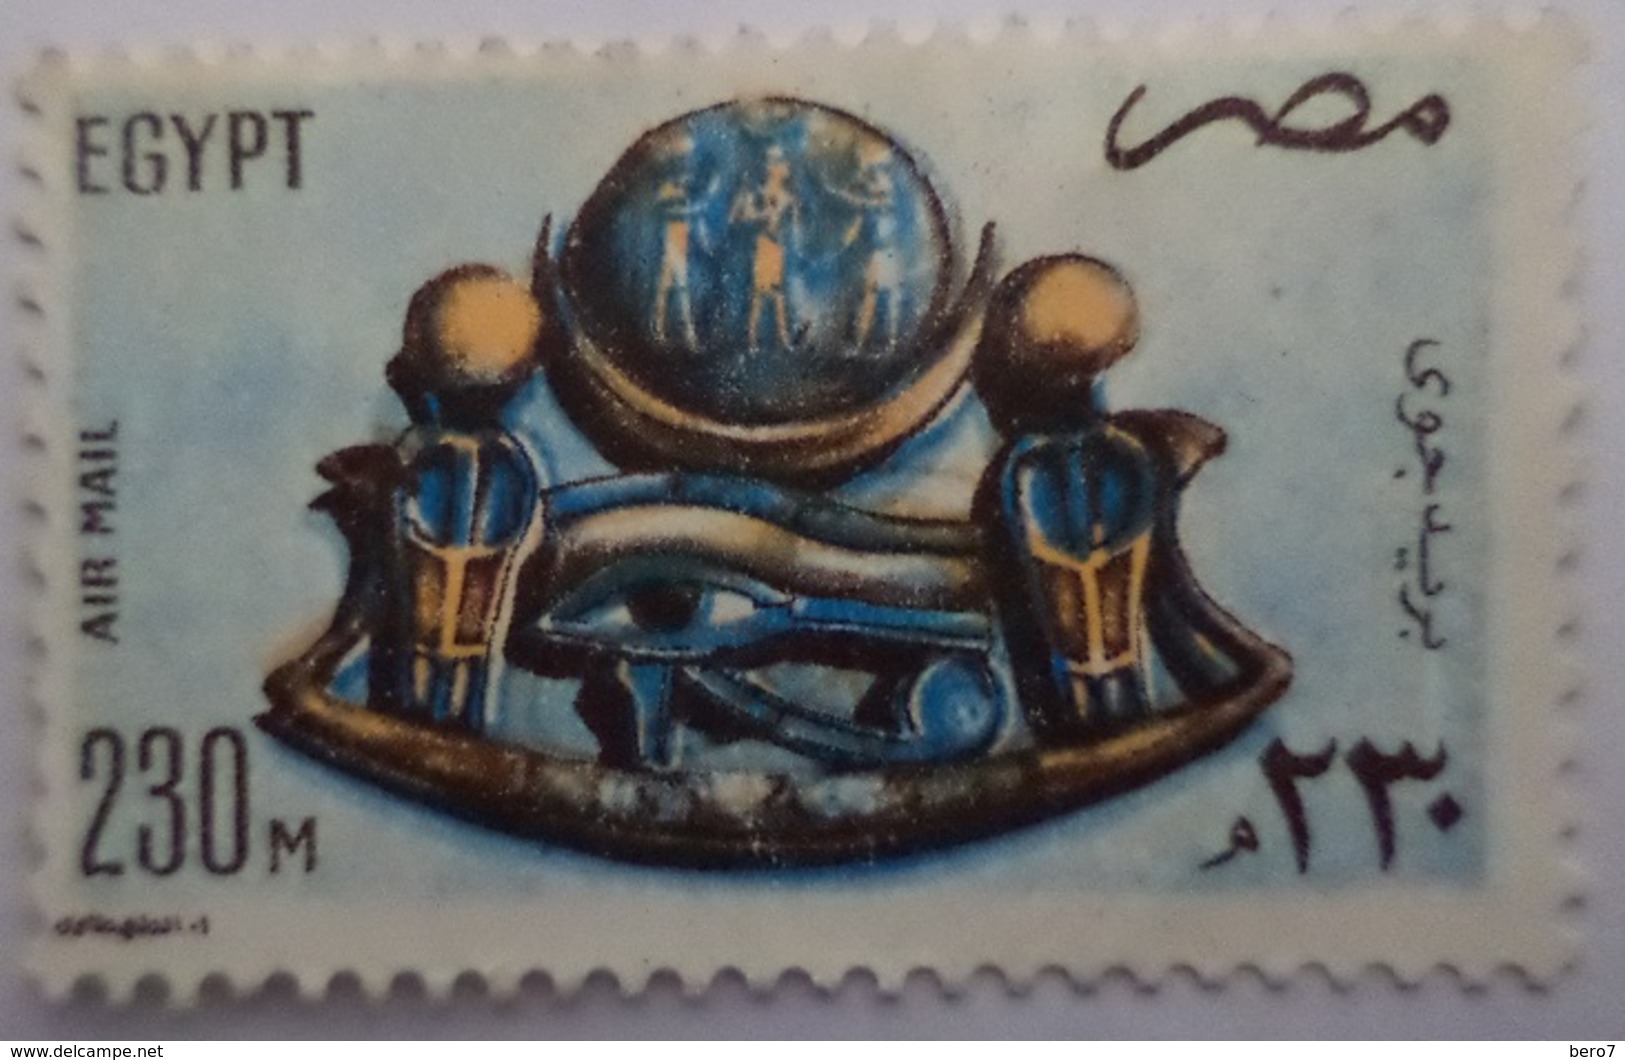 EGYPT - 1981- Old Egyptian Piece Of Jewelry- Air Mail -  (Egypte) (Egitto) (Ägypten) (Egipto) (Egypten) - Oblitérés